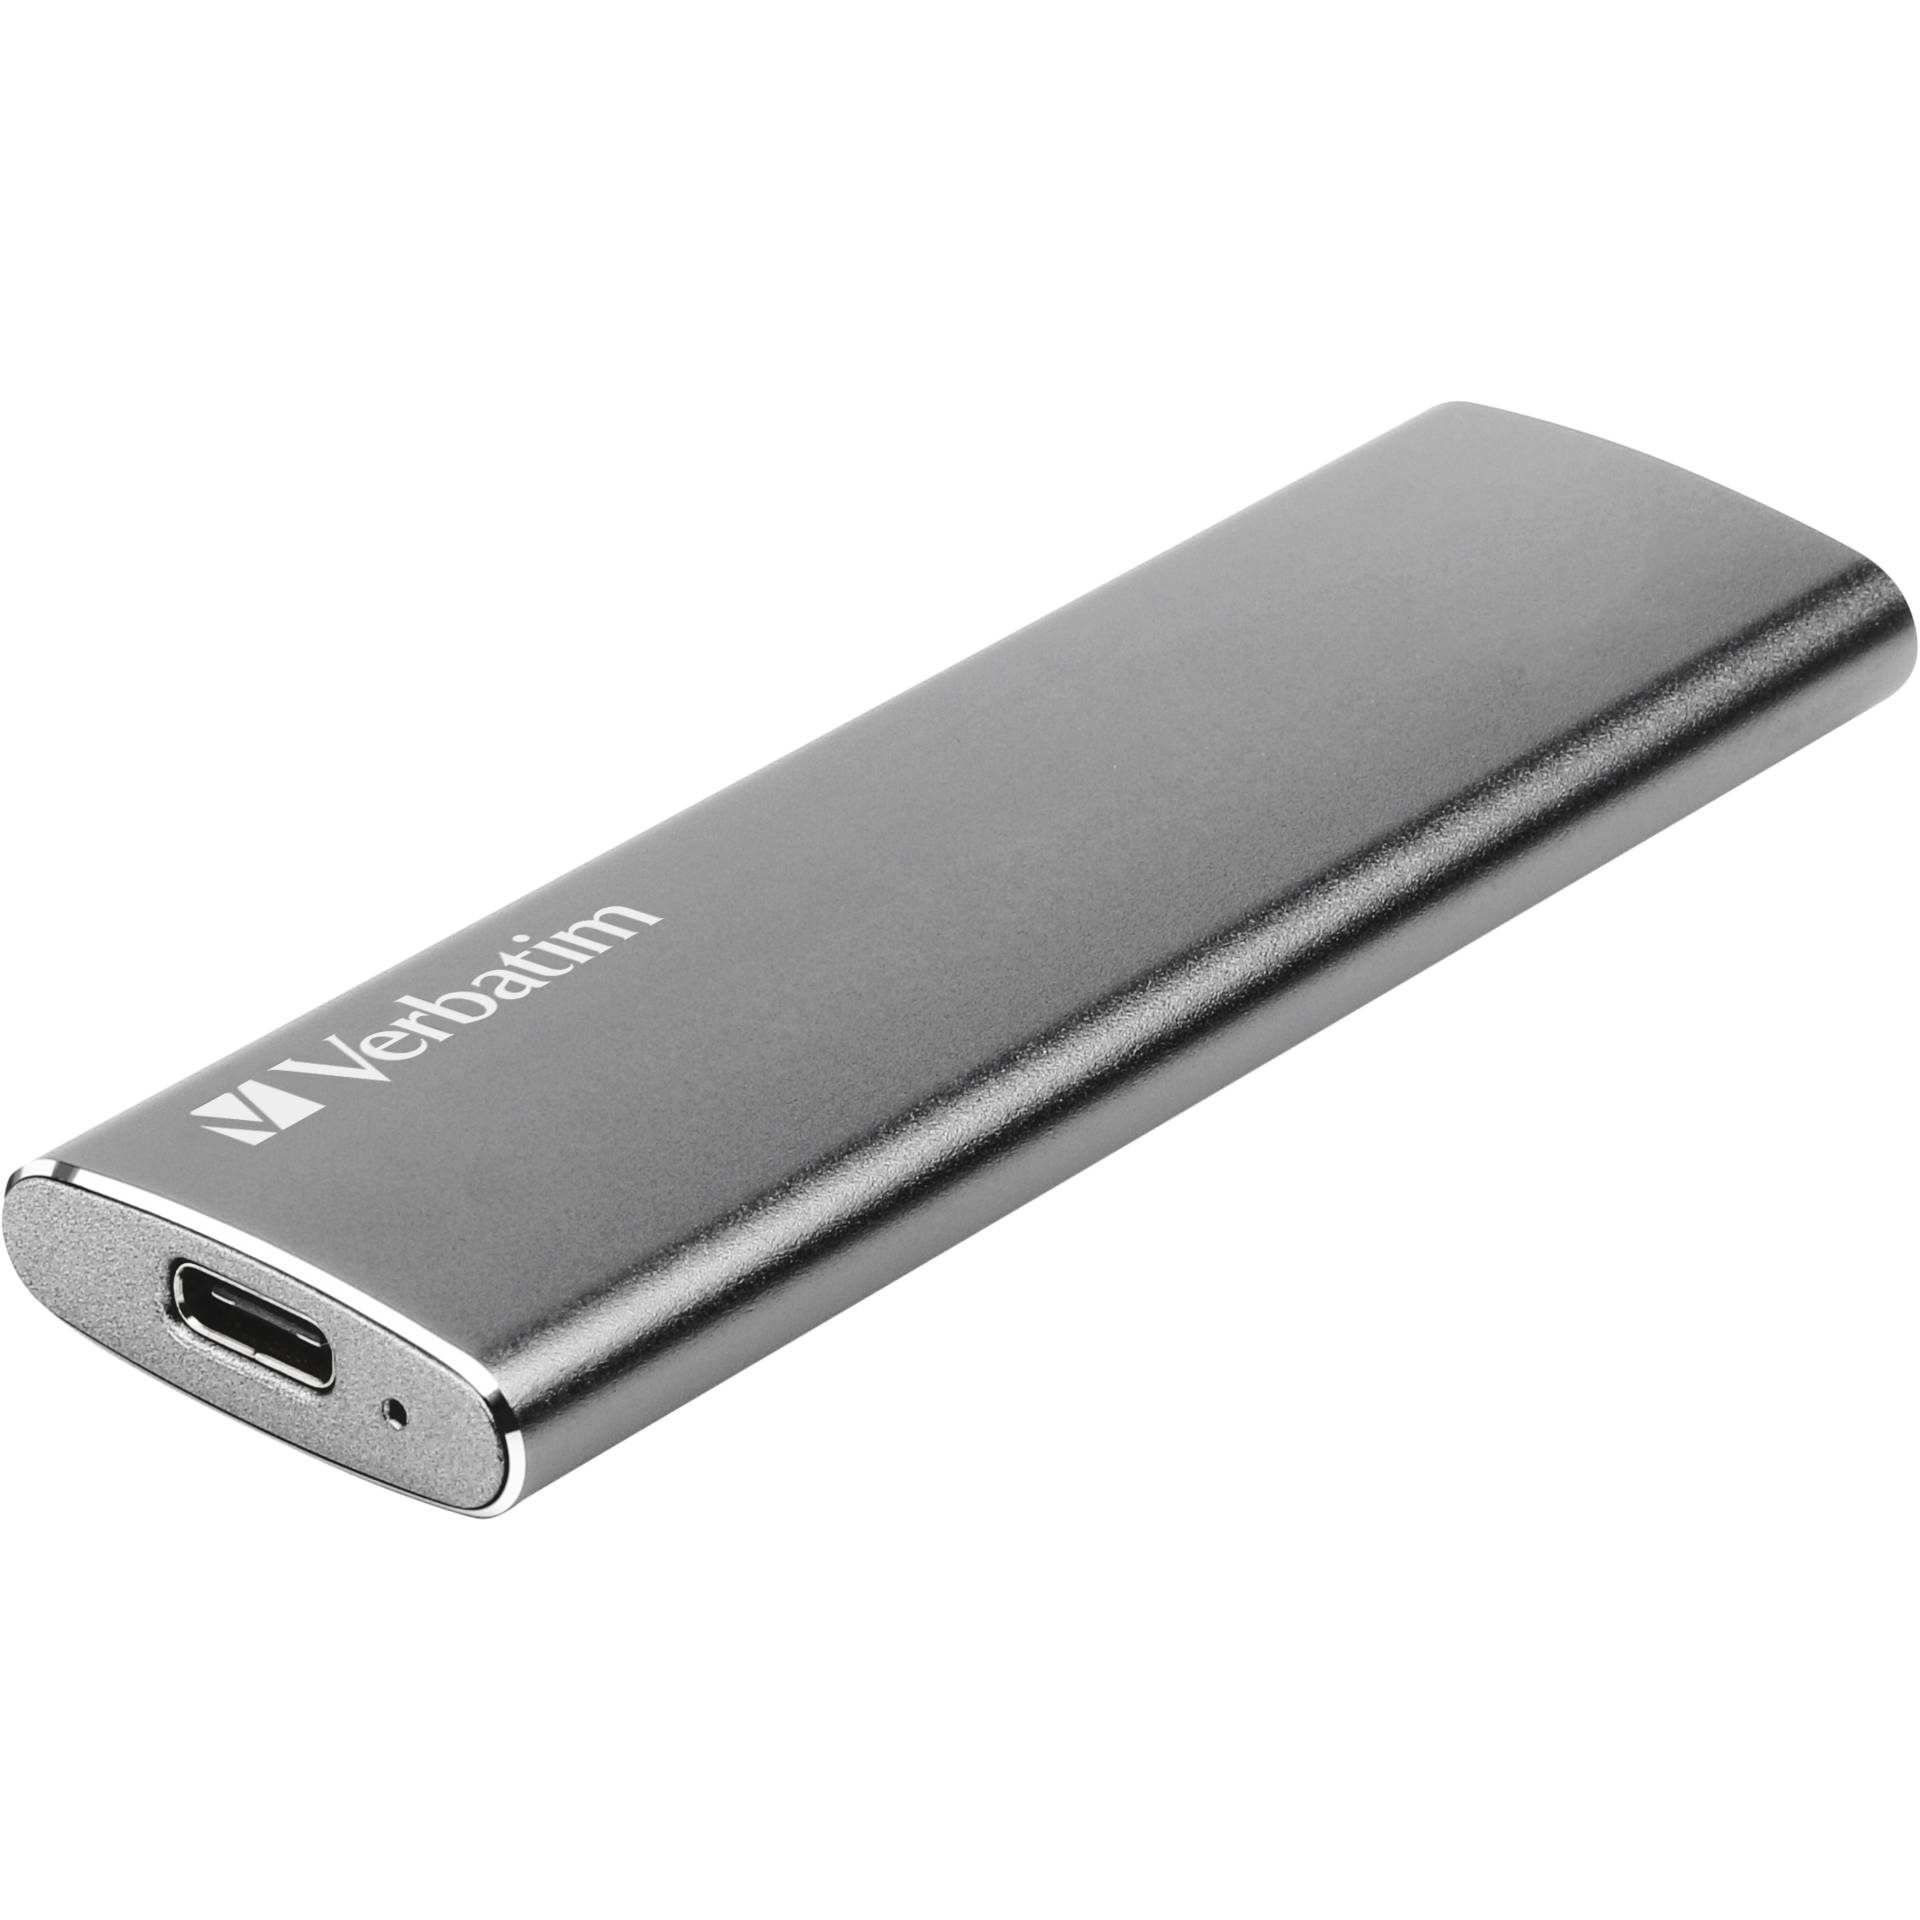 480 GB Verbatim Vx500 External Solid State Drive externe SSD 1x USB-C 3.1